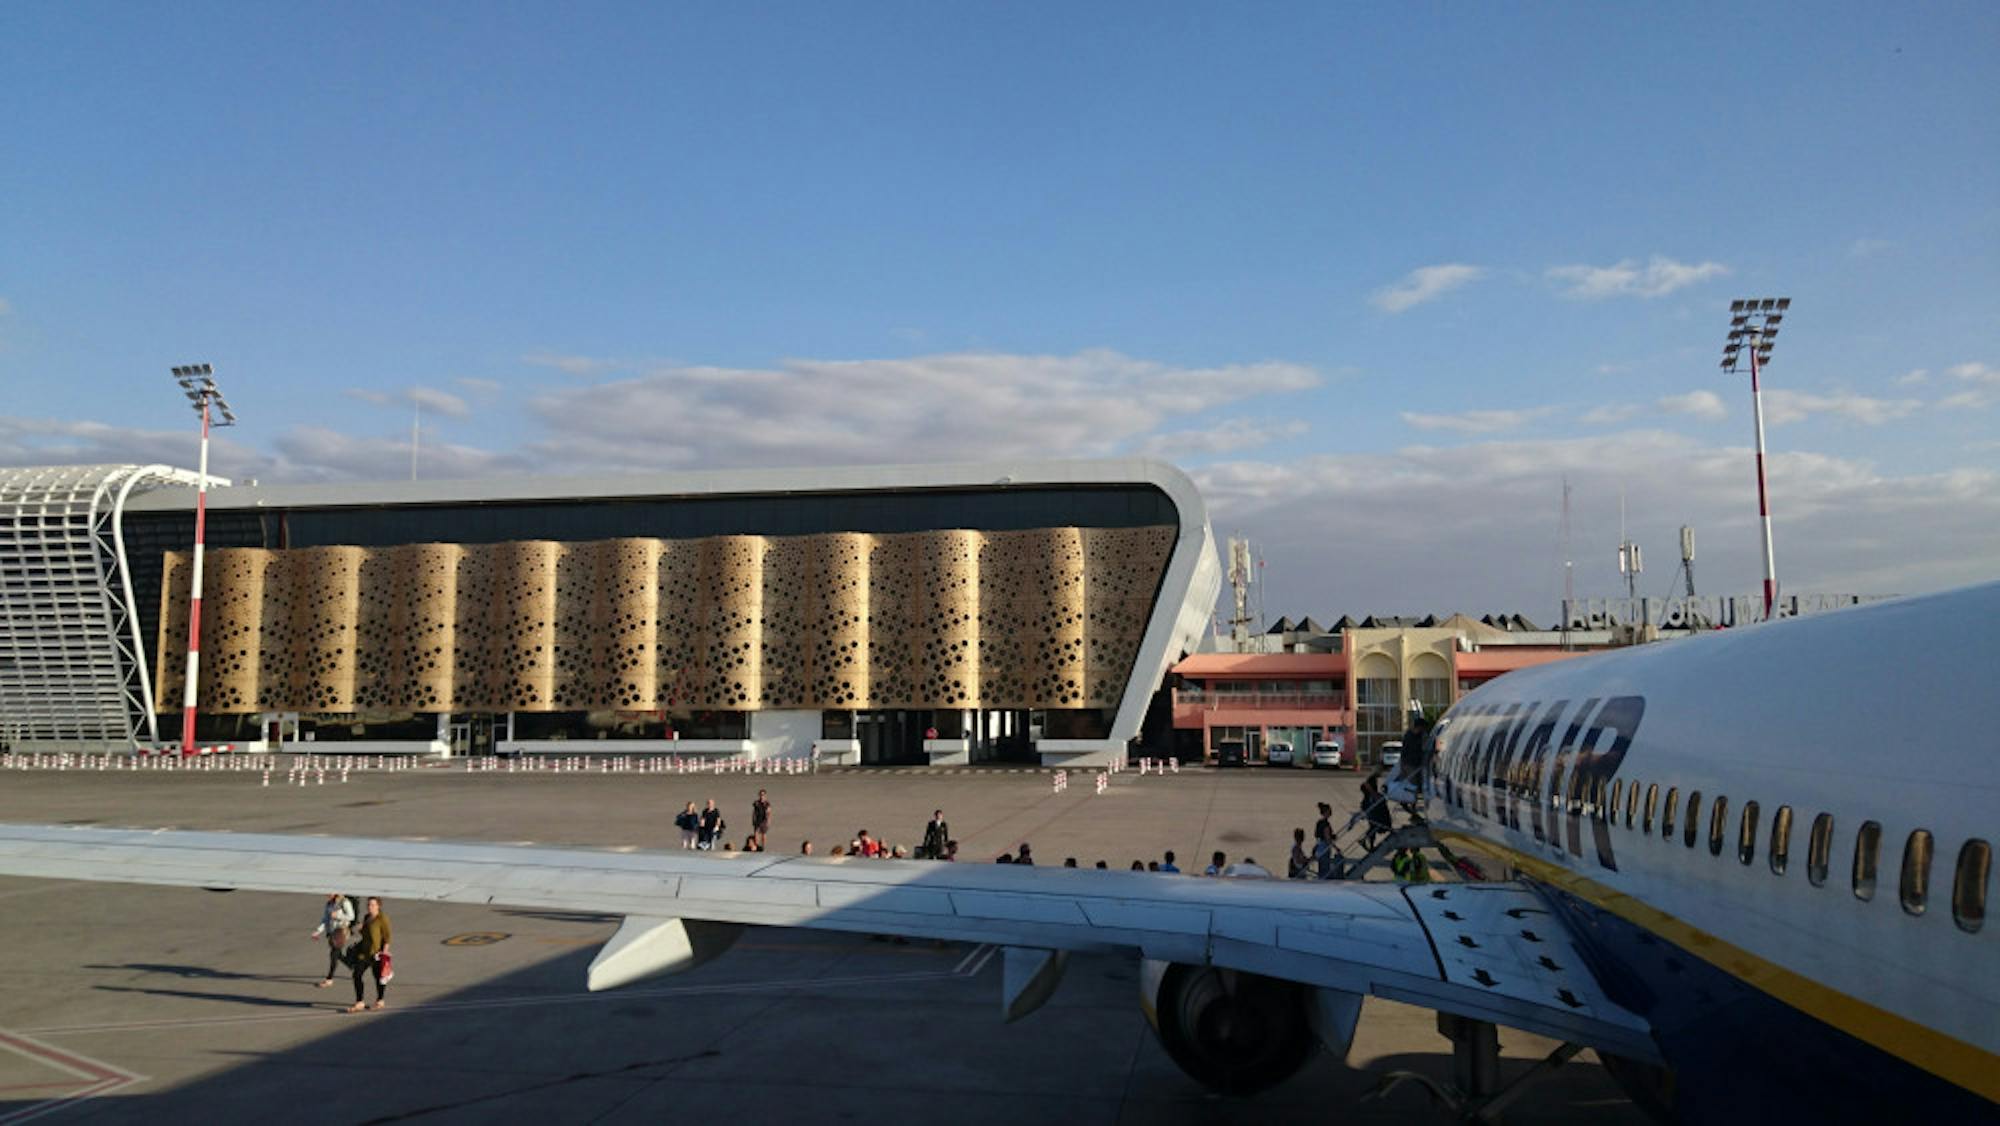 Marrakesh_Menara_Airport_New_Terminal